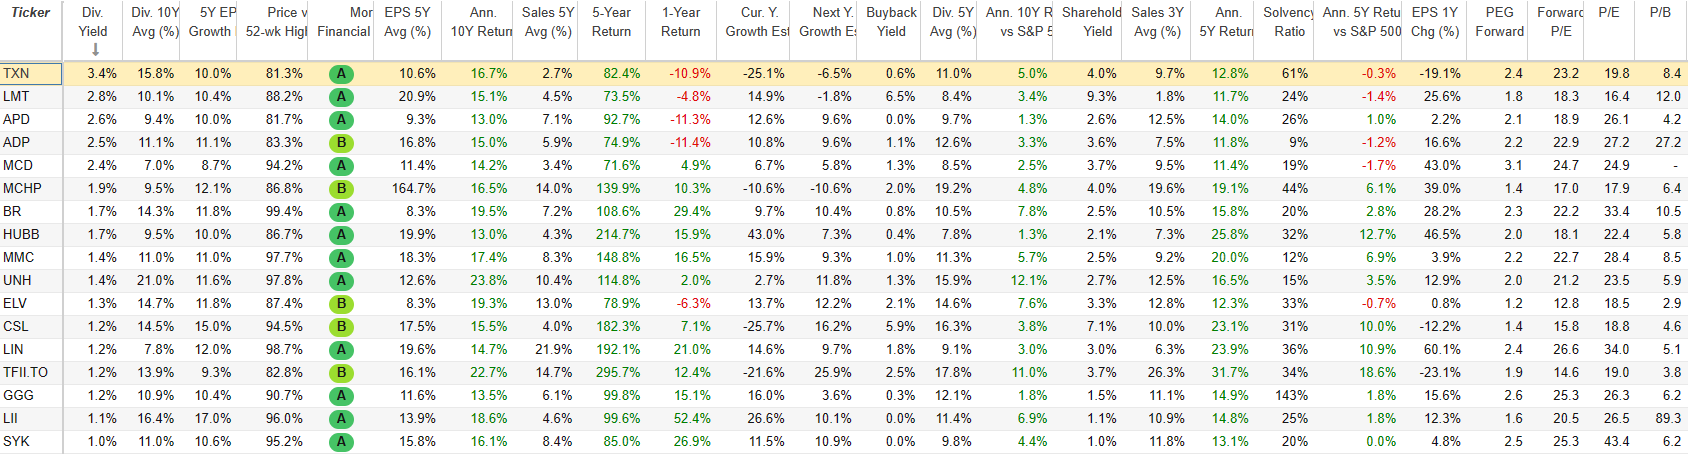 best dividend stocks list for long-term holds as of Nov 28